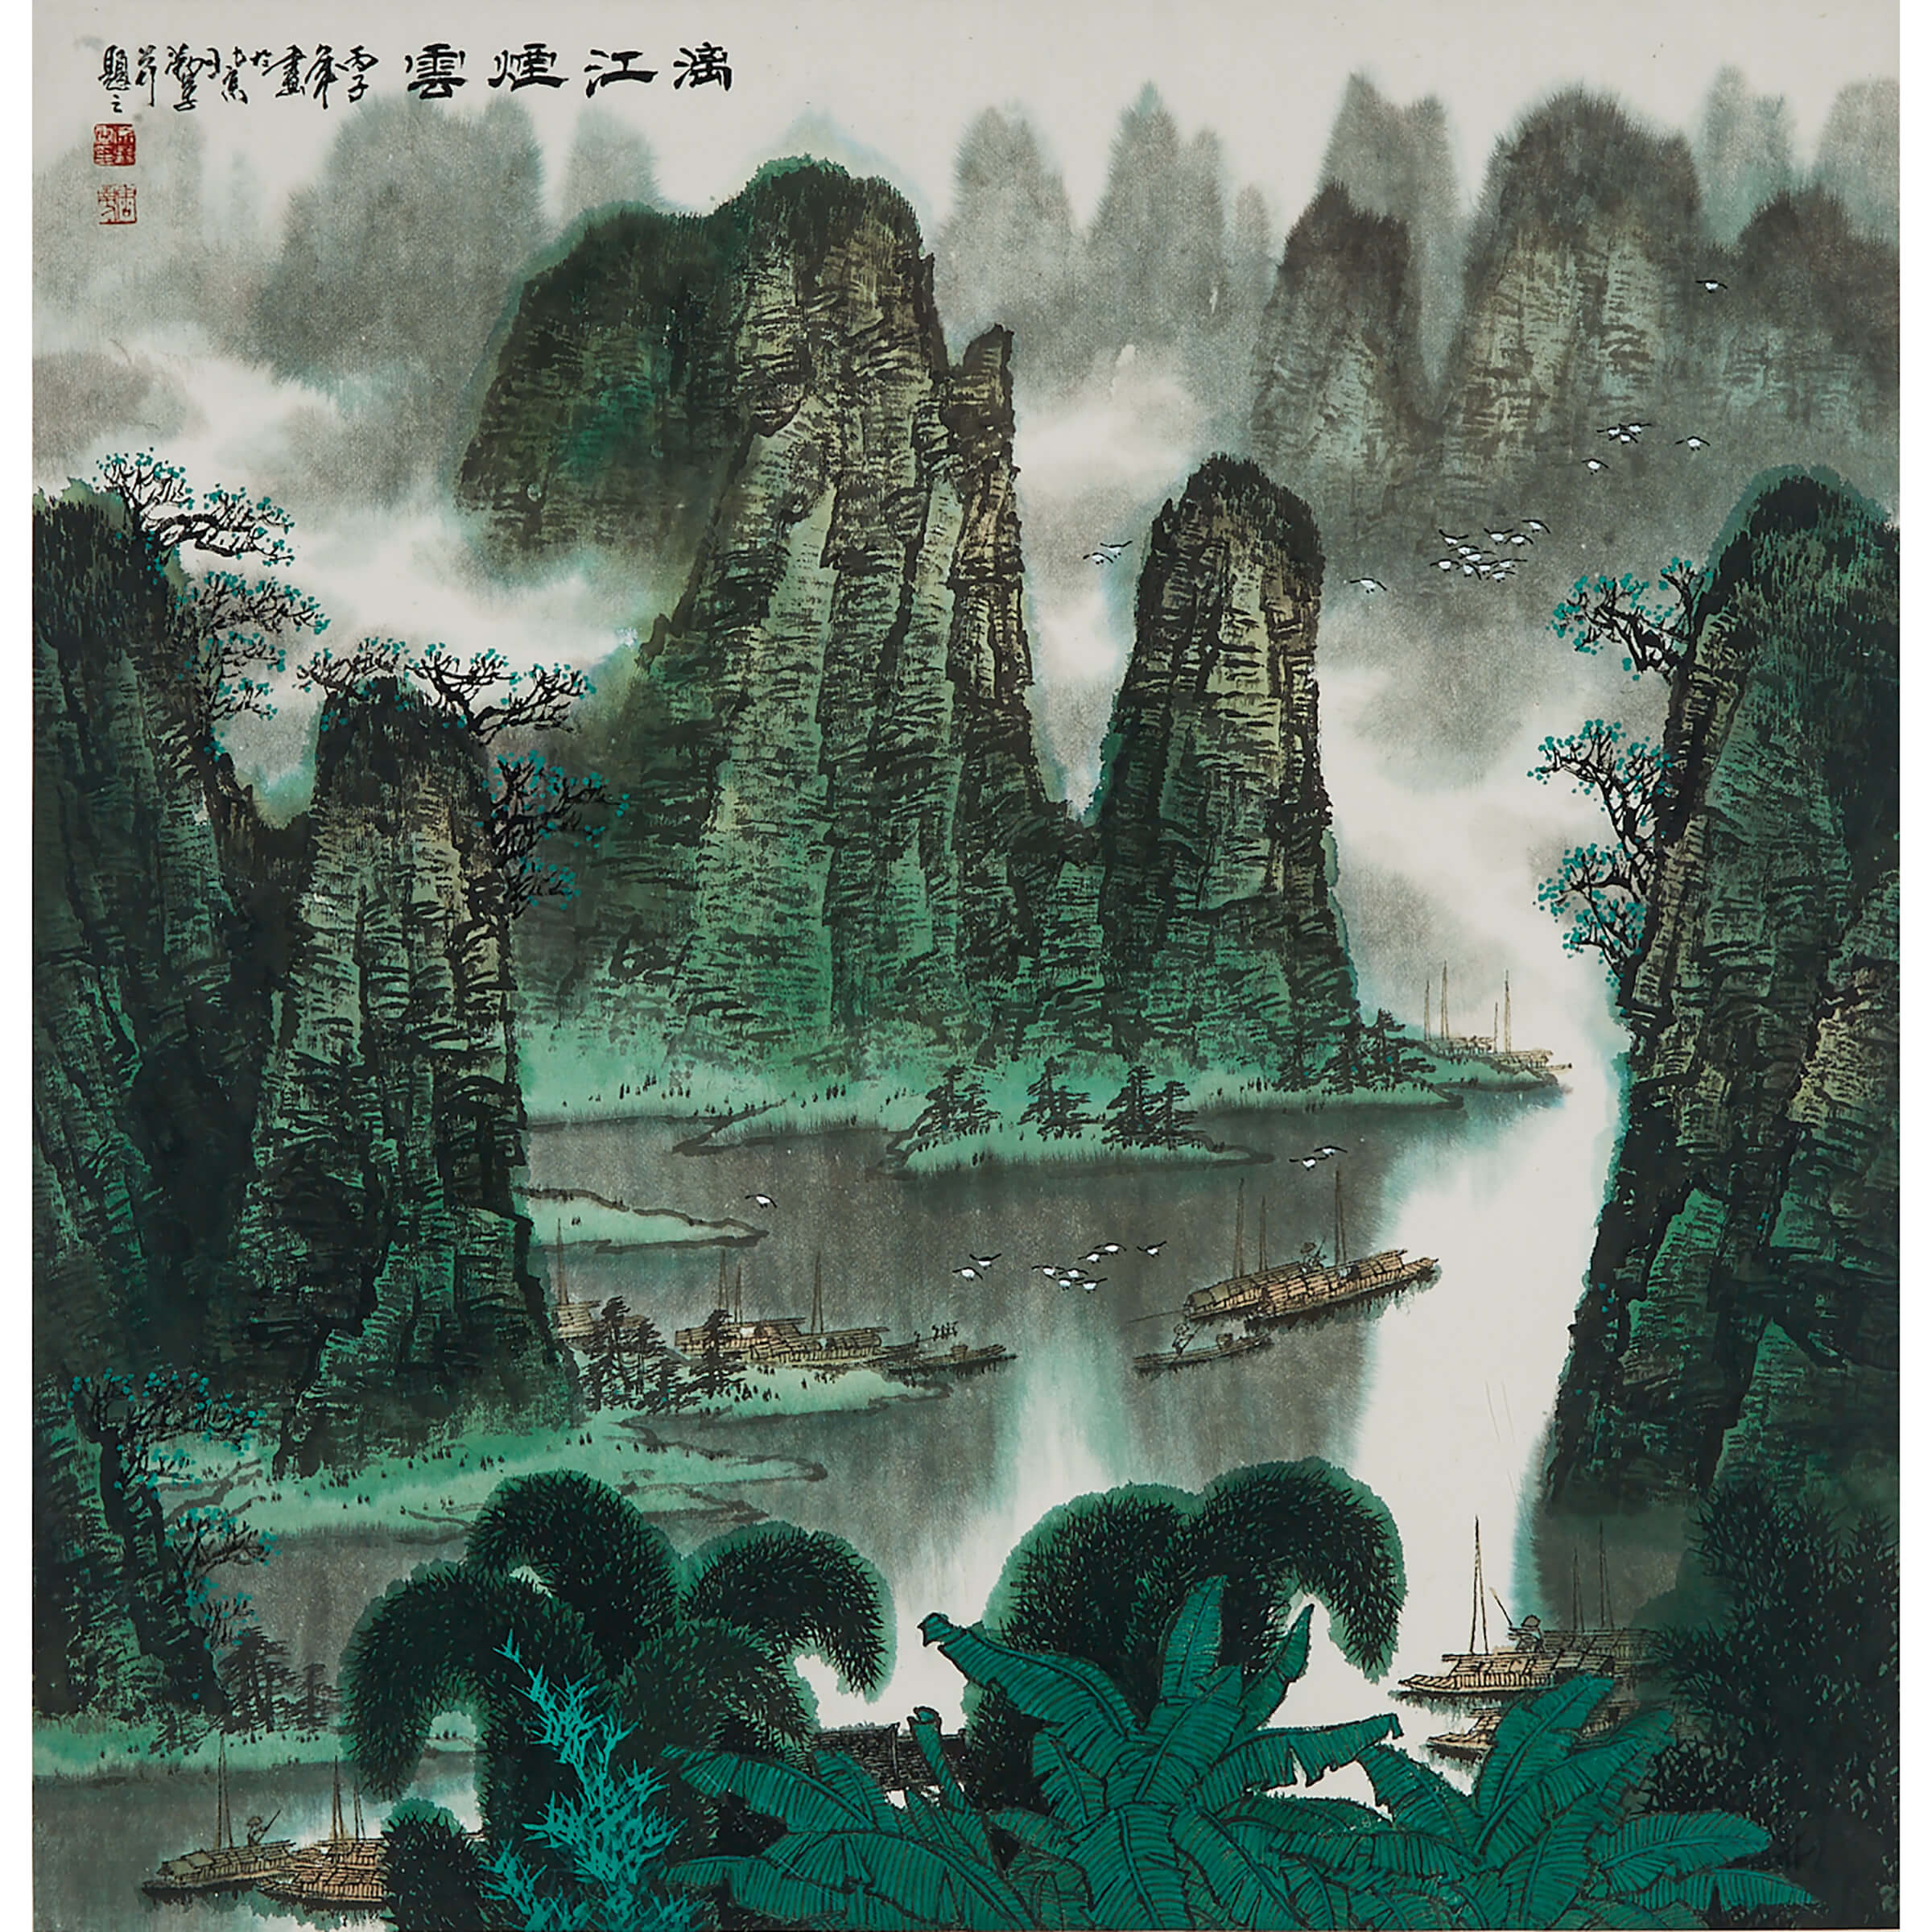 Xu Qinjun (1955-), Landscape